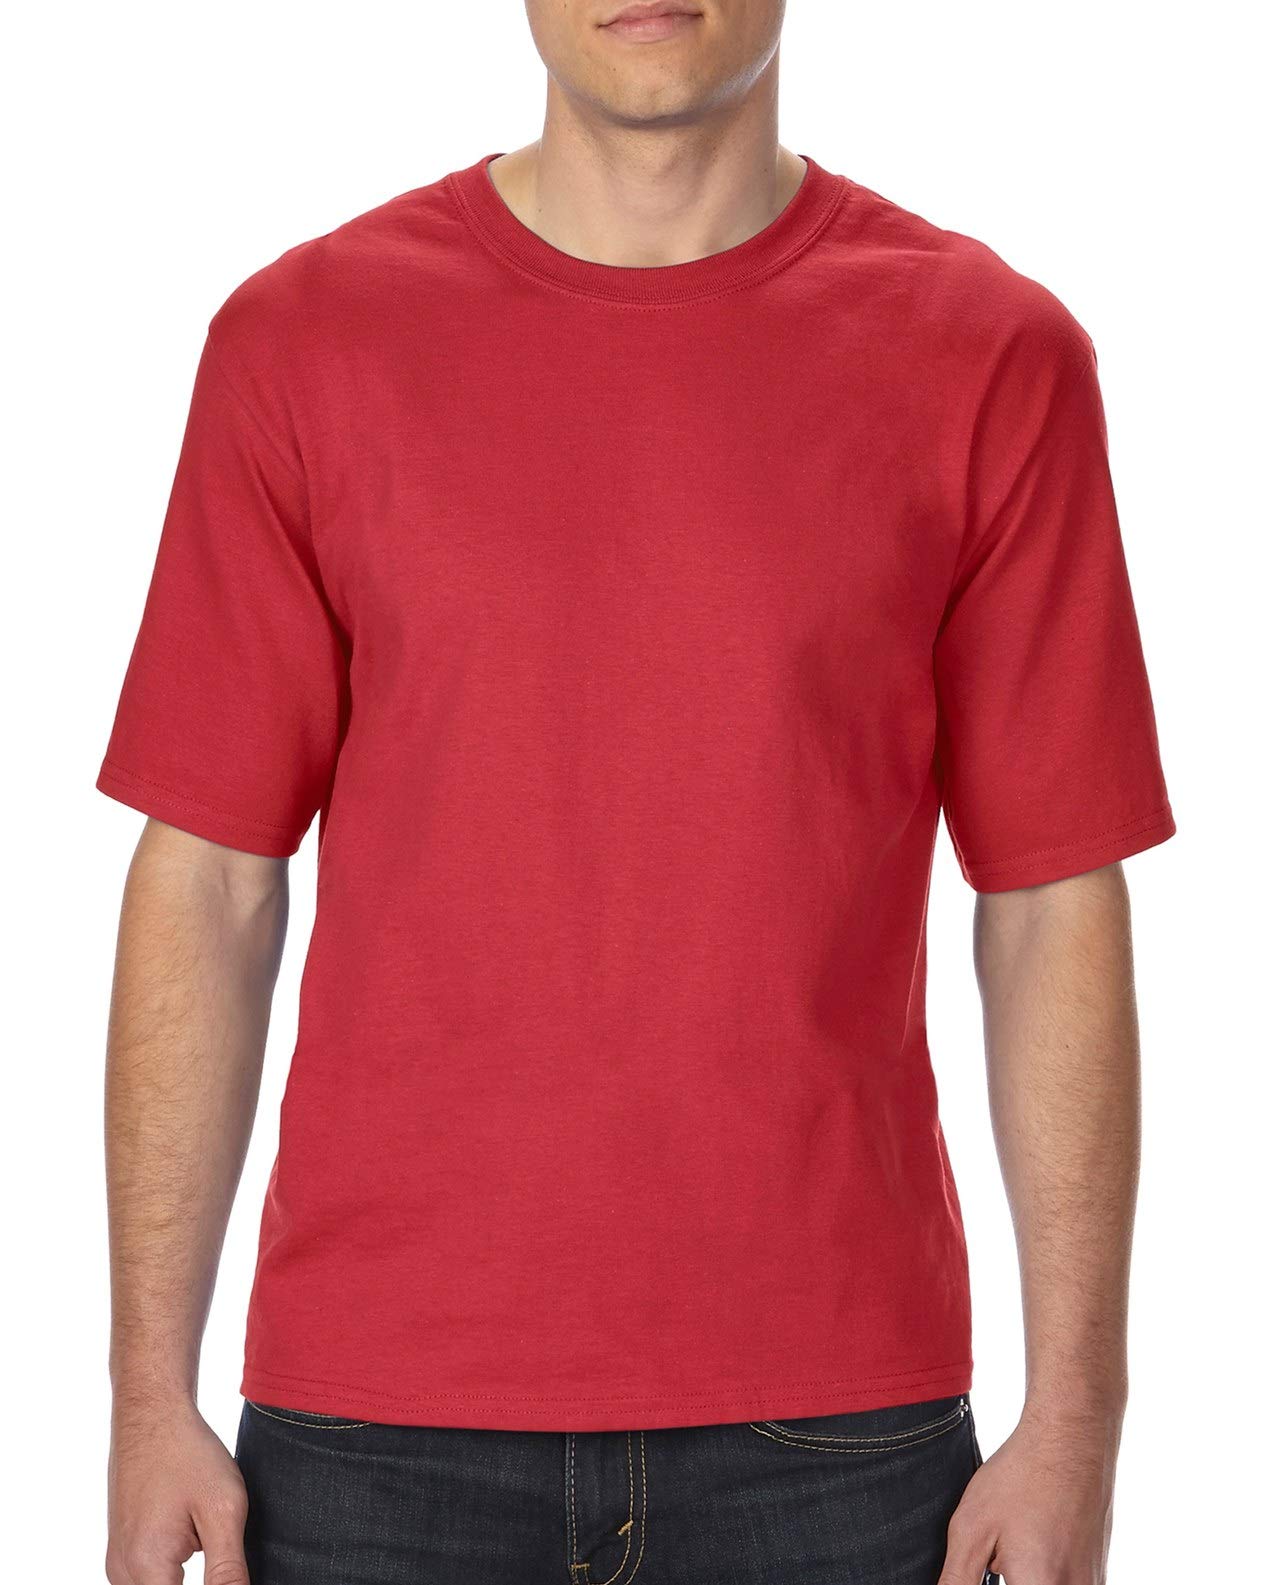 Gildan Classic Fit Adult Tall T-Shirt, Red, XX-Large Tall